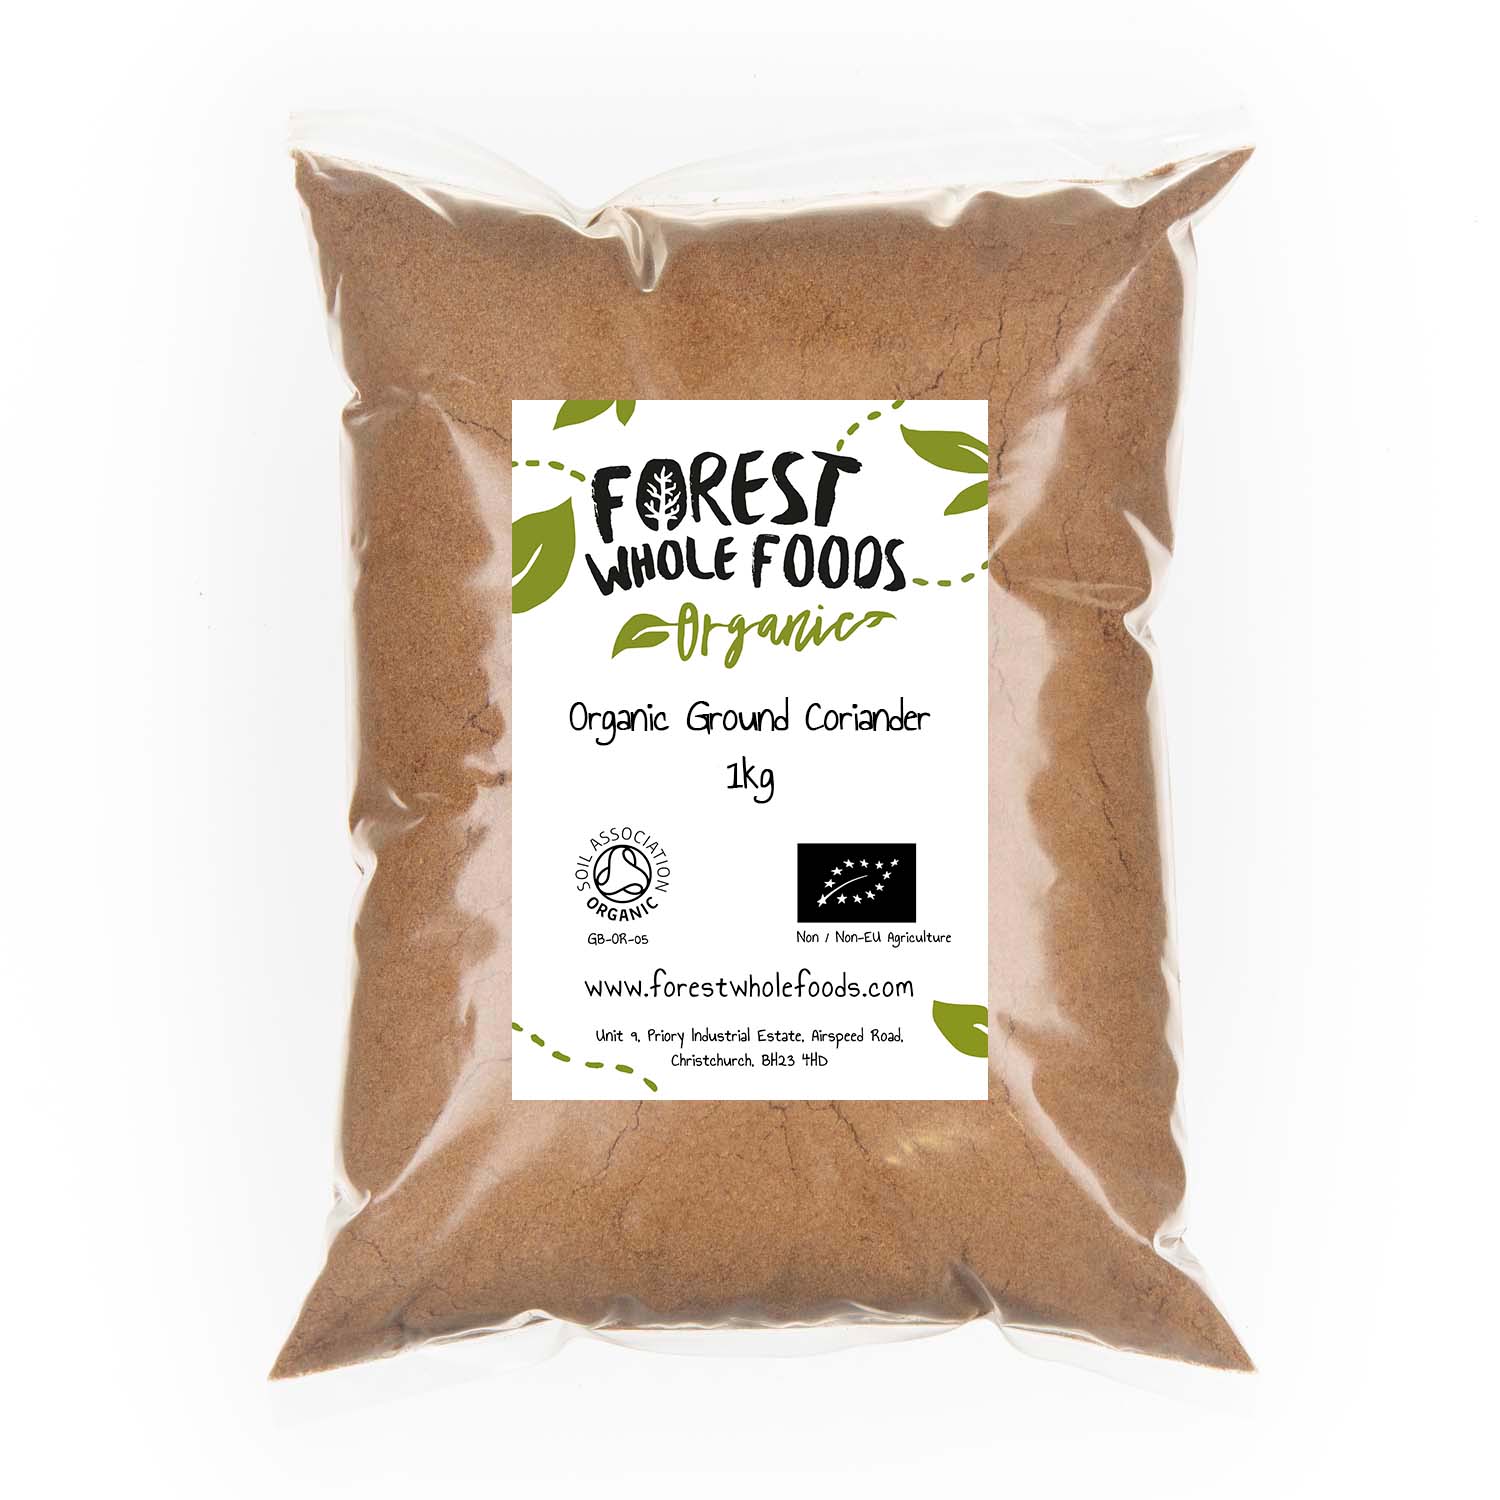 Organic Ground Coriander 1kg